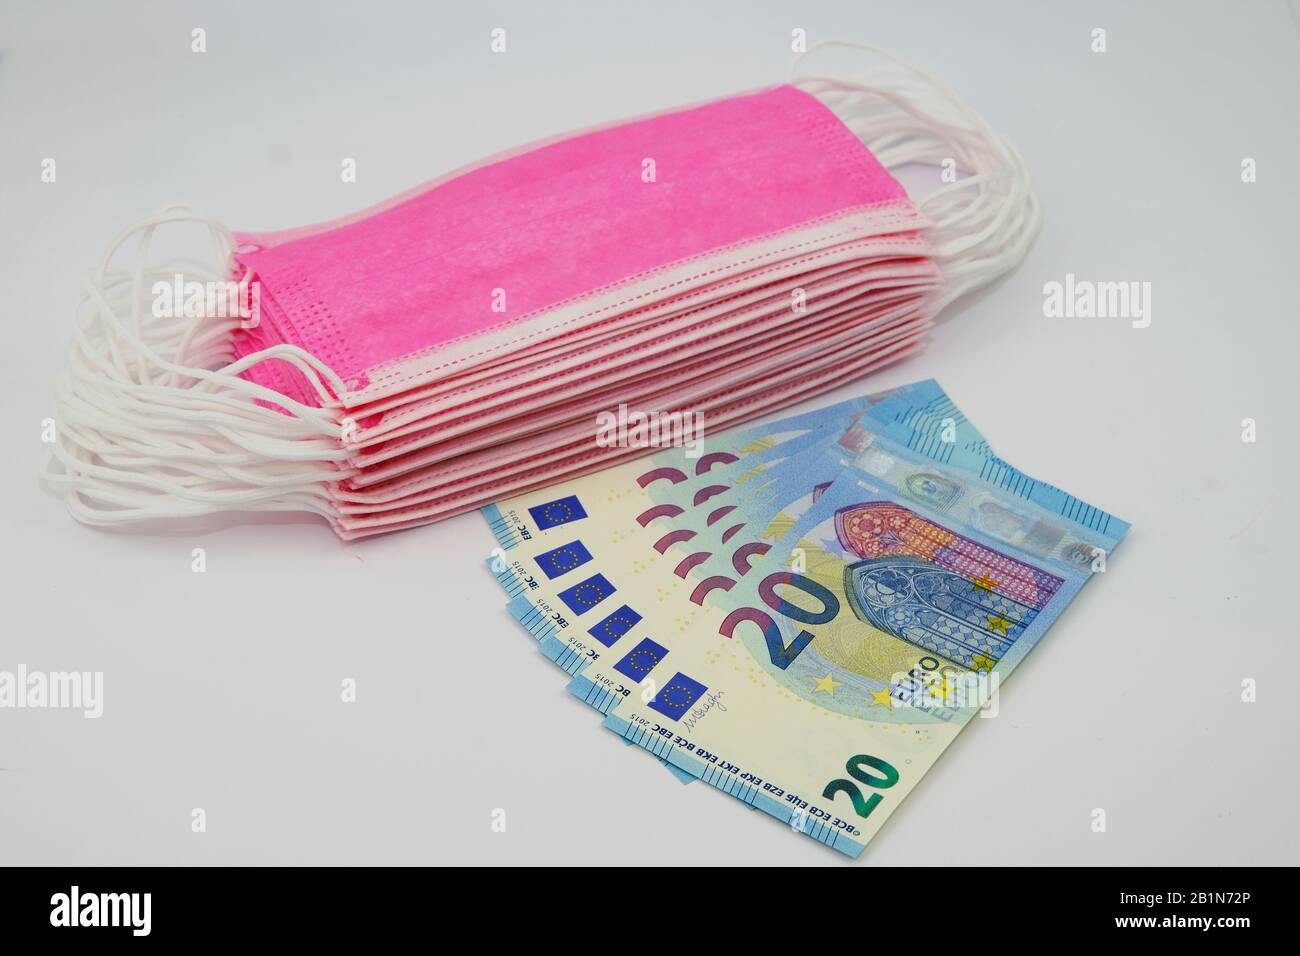 Maschere facciali rosa per la protezione antivirus e 20 banconote in euro. Concetto di alto prezzo delle maschere chirurgiche durante l'epidemia in Europa Foto Stock